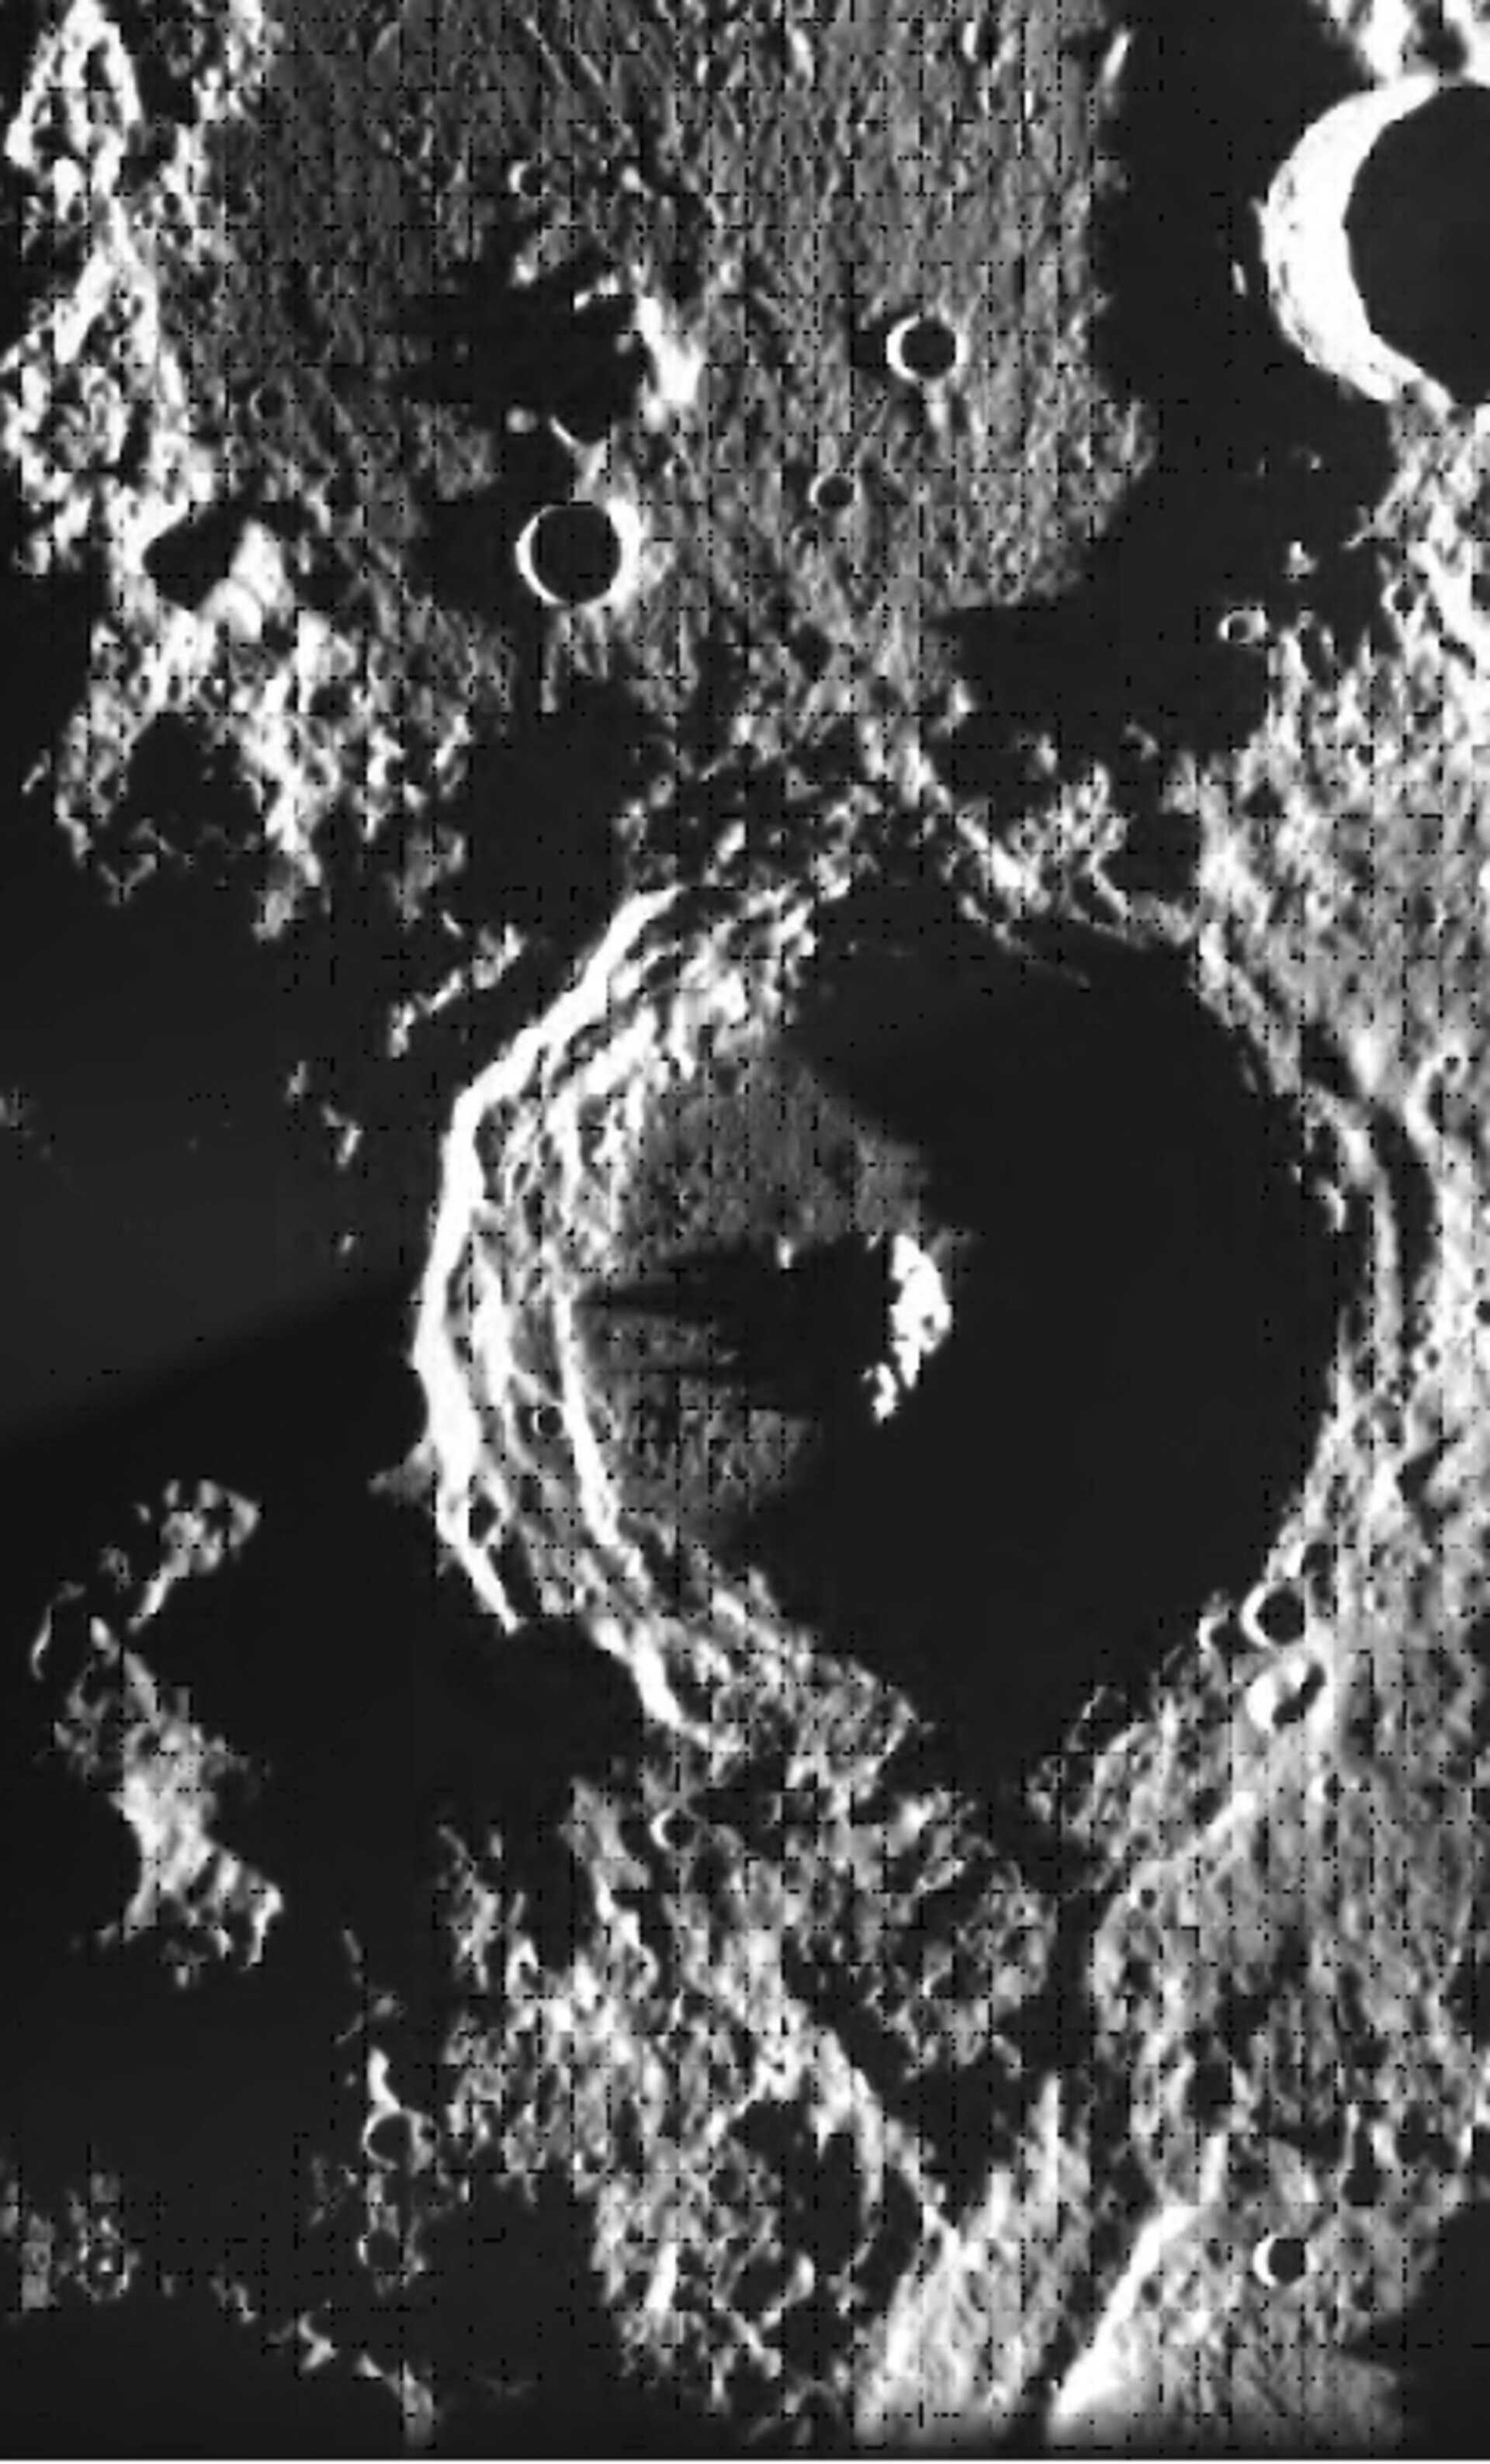 Crater Plaskett seen by SMART-1’s camera